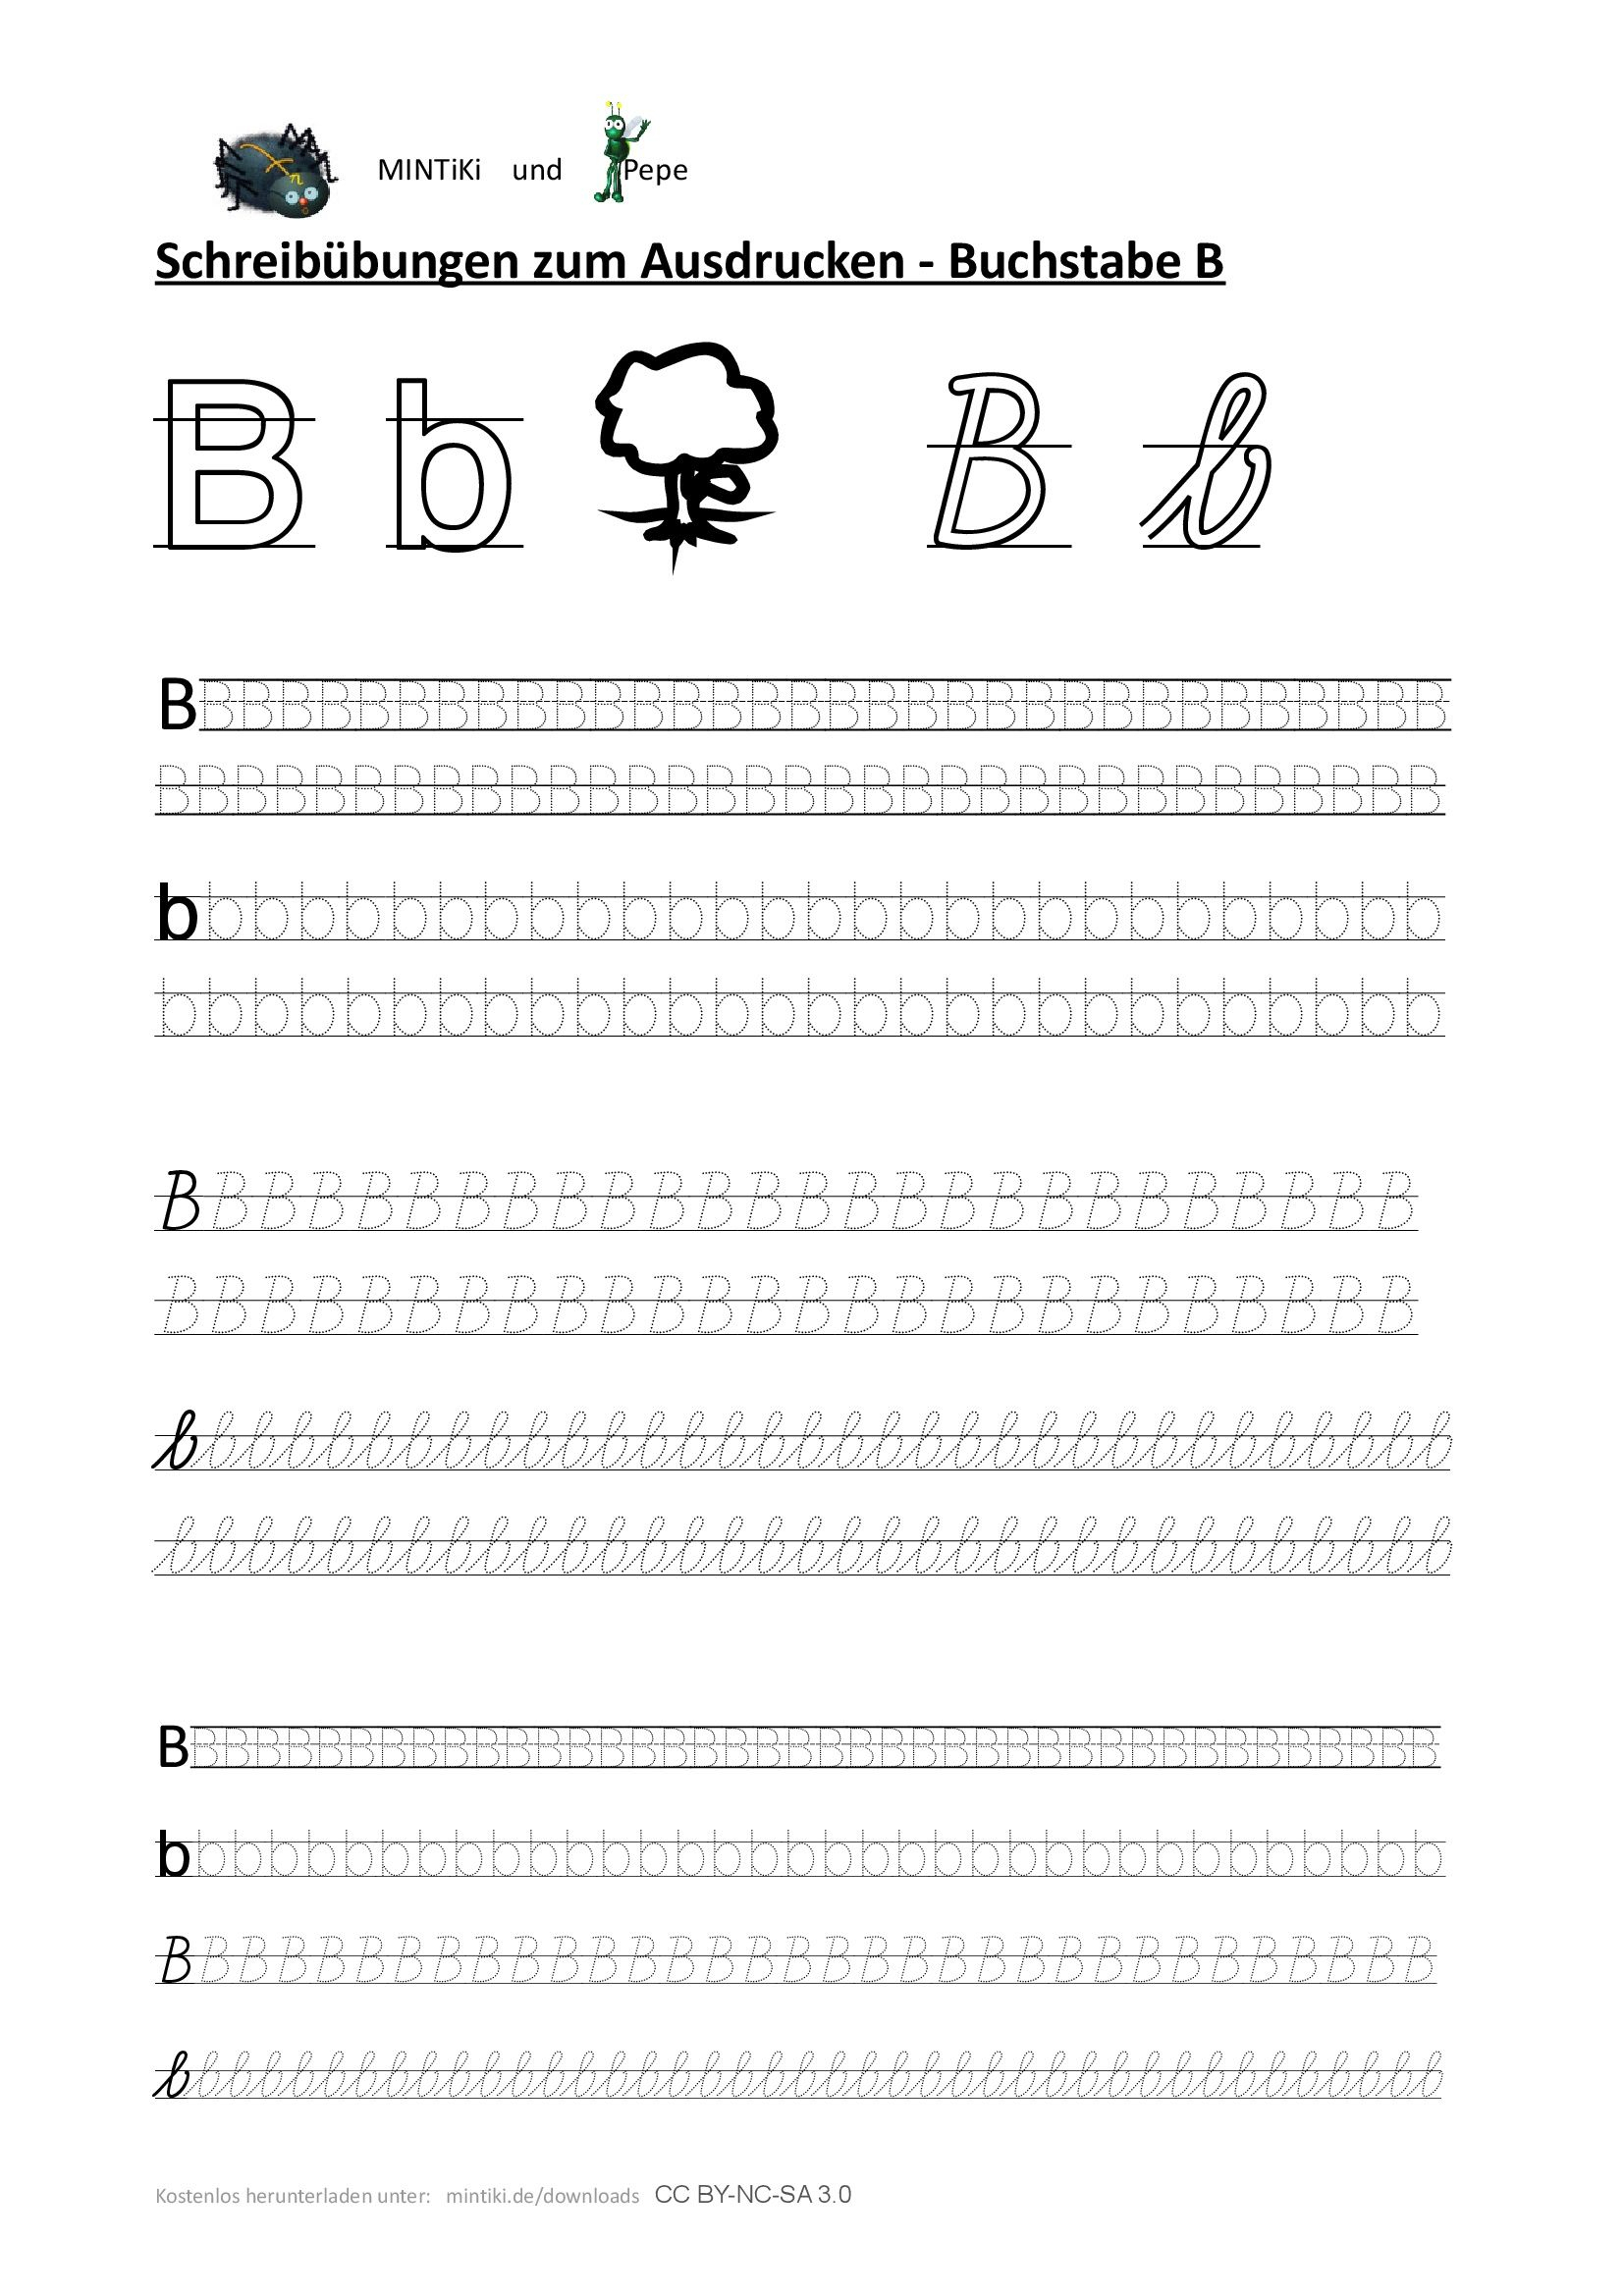 Schreibübung, Buchstabe B, Druckbuchstaben verwandt mit Alphabet Schreibschrift Grundschule